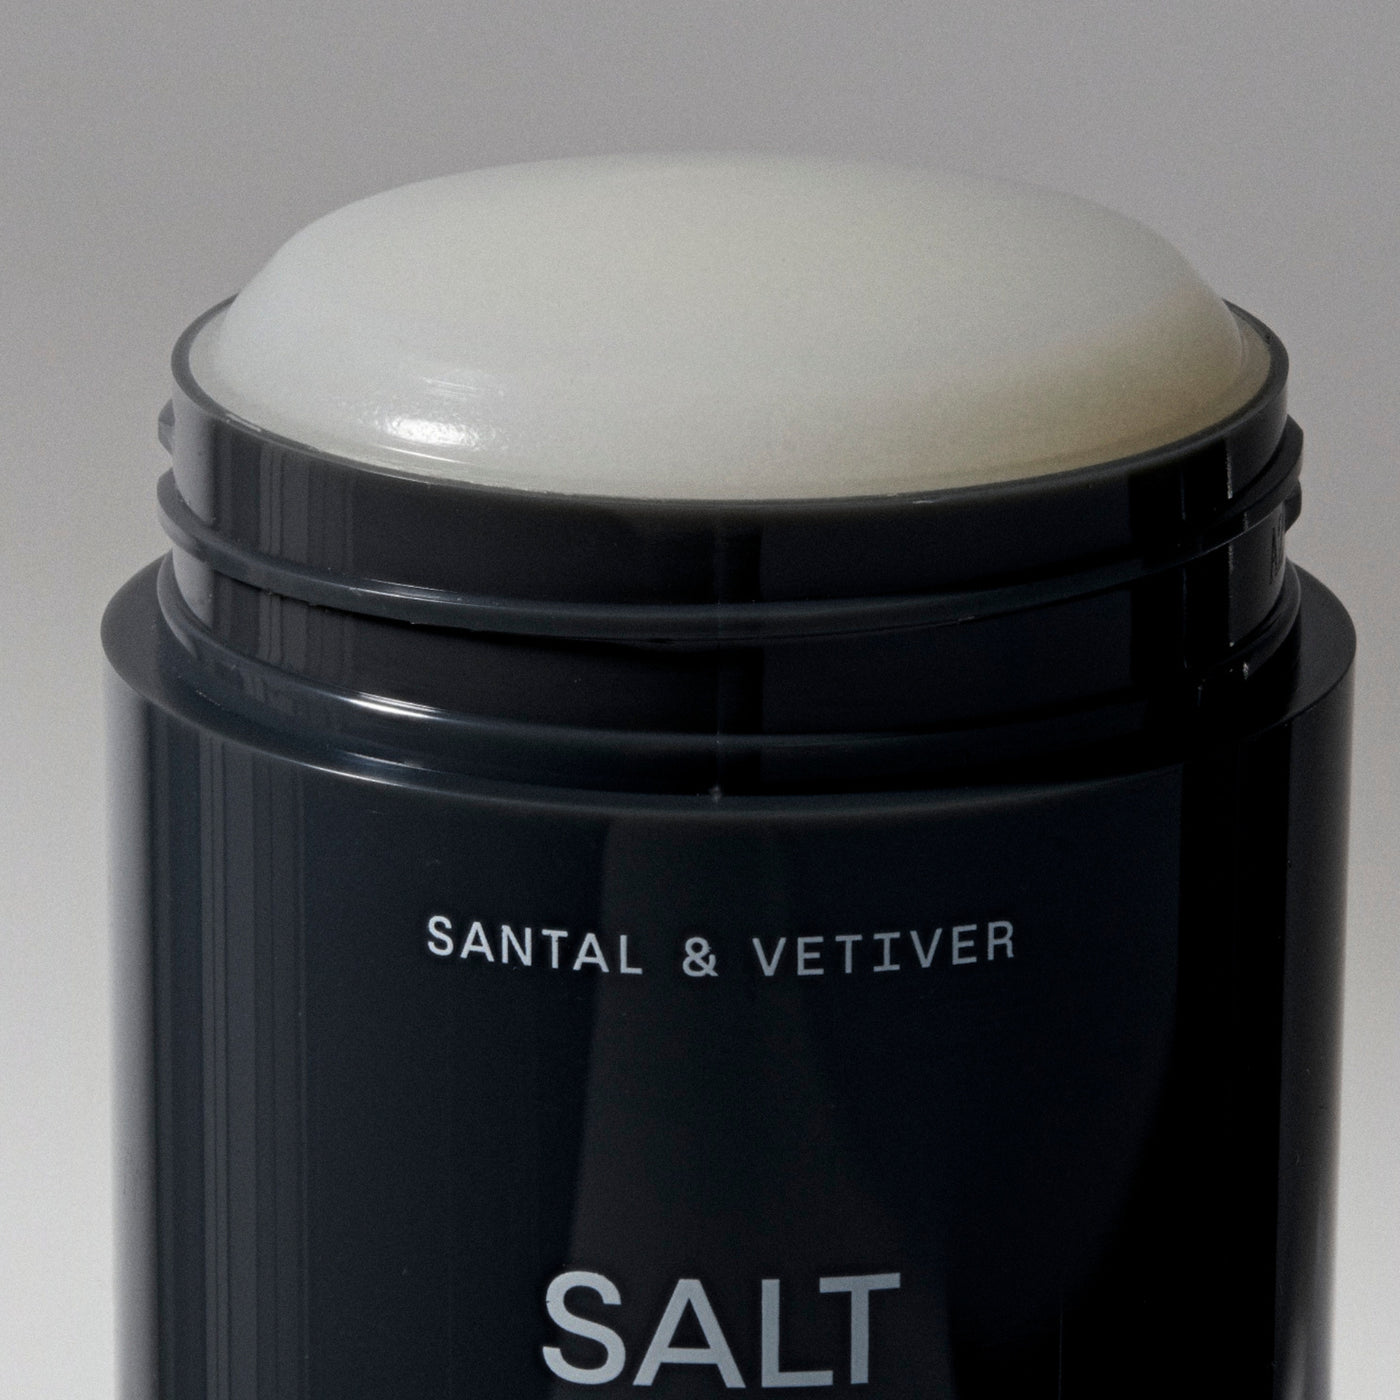 Santal & Vetiver Natural Deodorant Gel